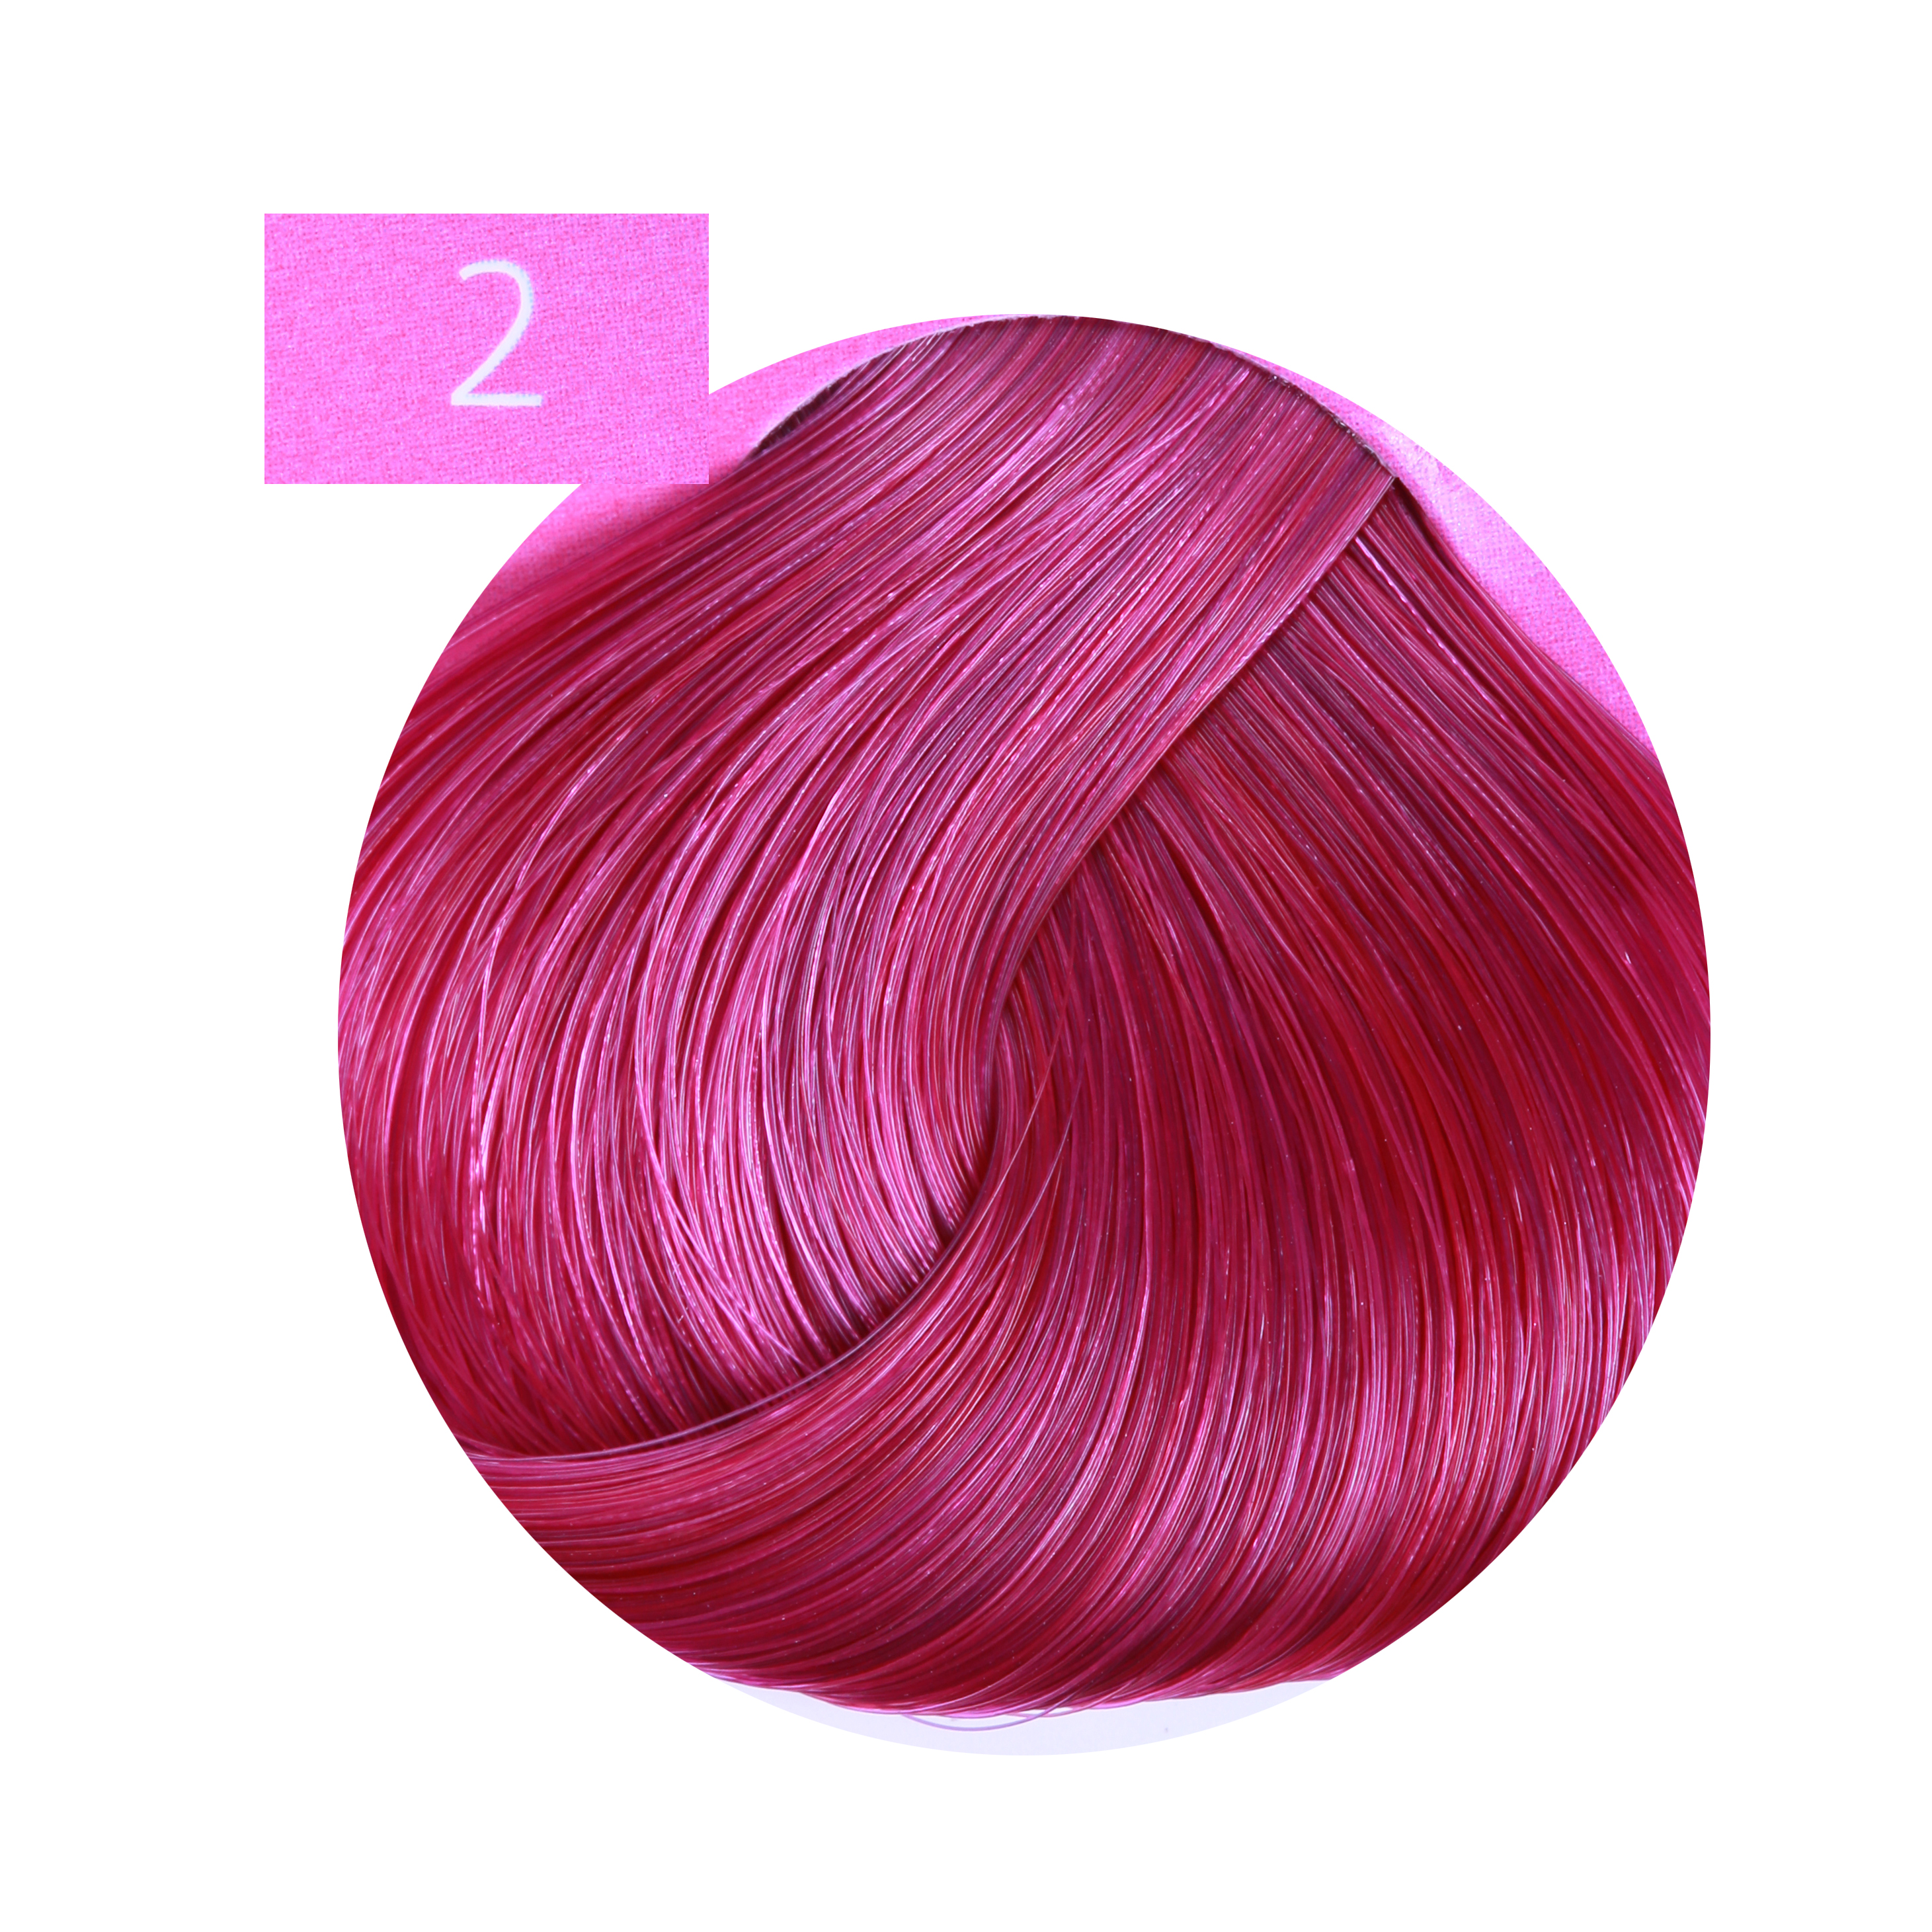 ESTEL PROFESSIONAL 2 краска для волос, лиловый / ESSEX Princess Fashion 60 мл креативное агентство одержи победу в грандиозной битве амбиций